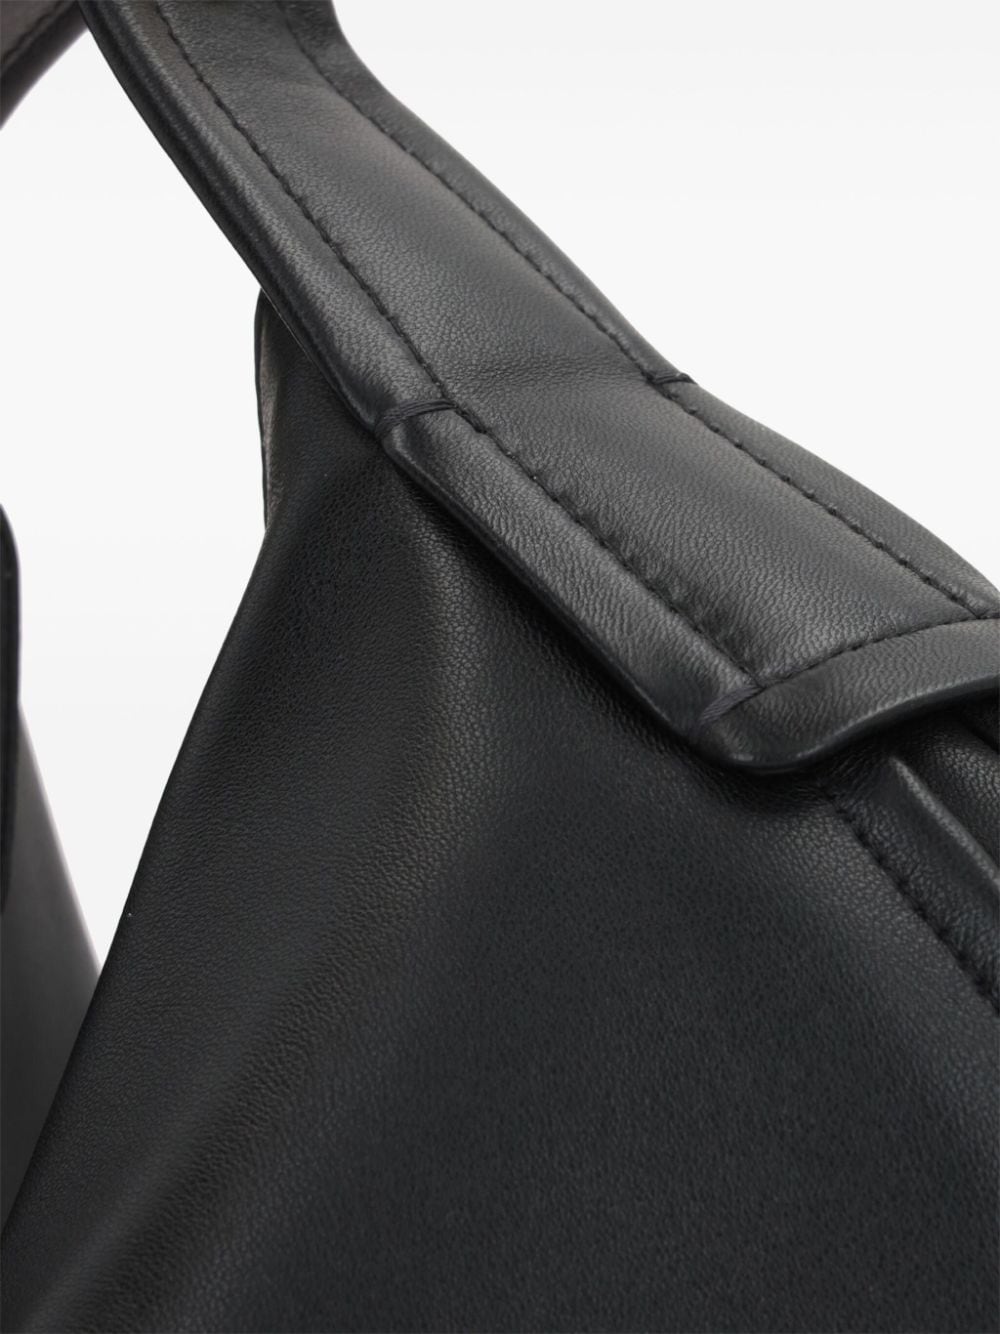 Shop Valentino Go Hobo Leather Tote-bag In Black